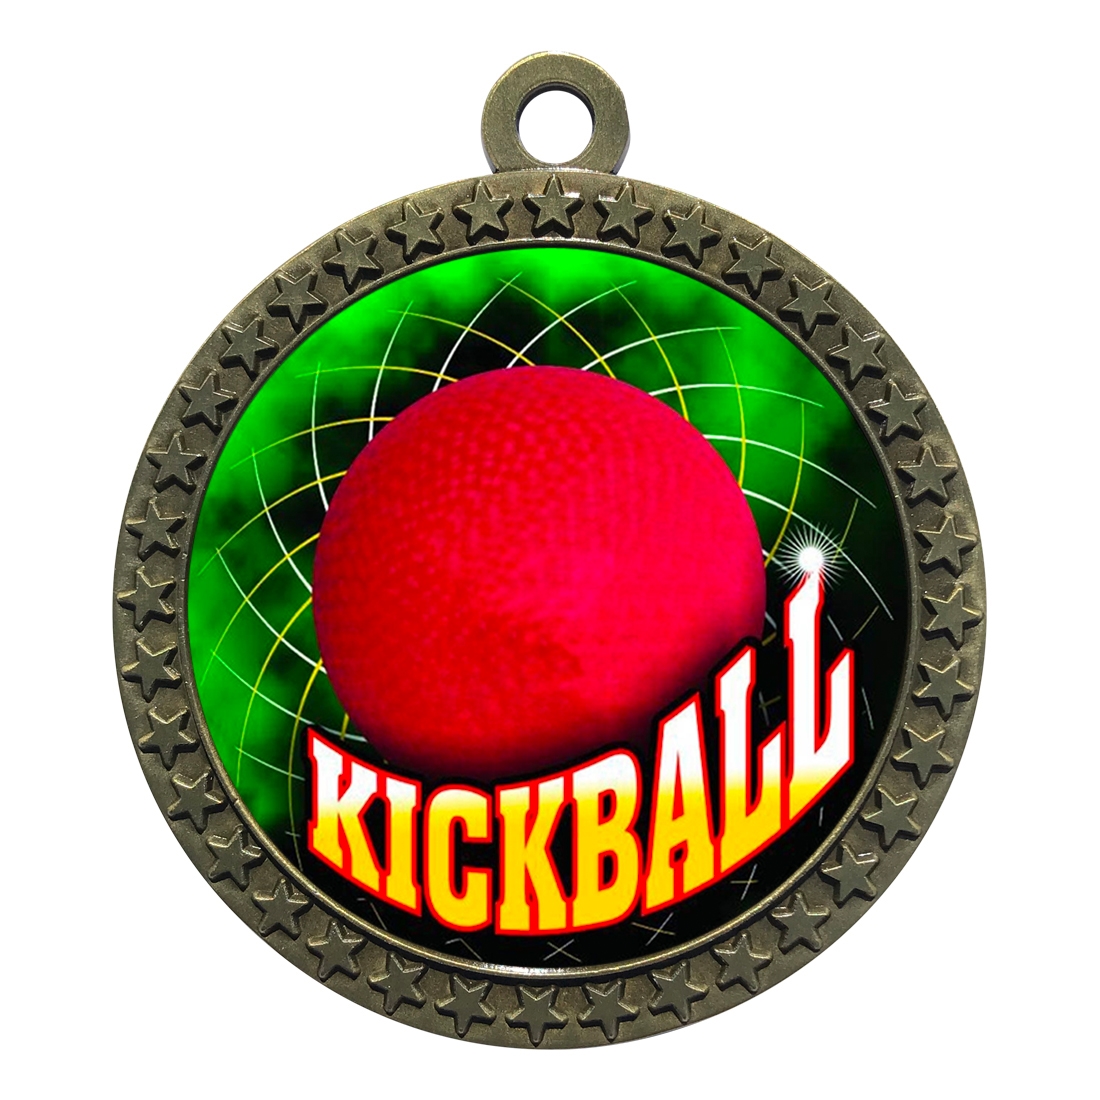 2-1/2" Kickball Medal